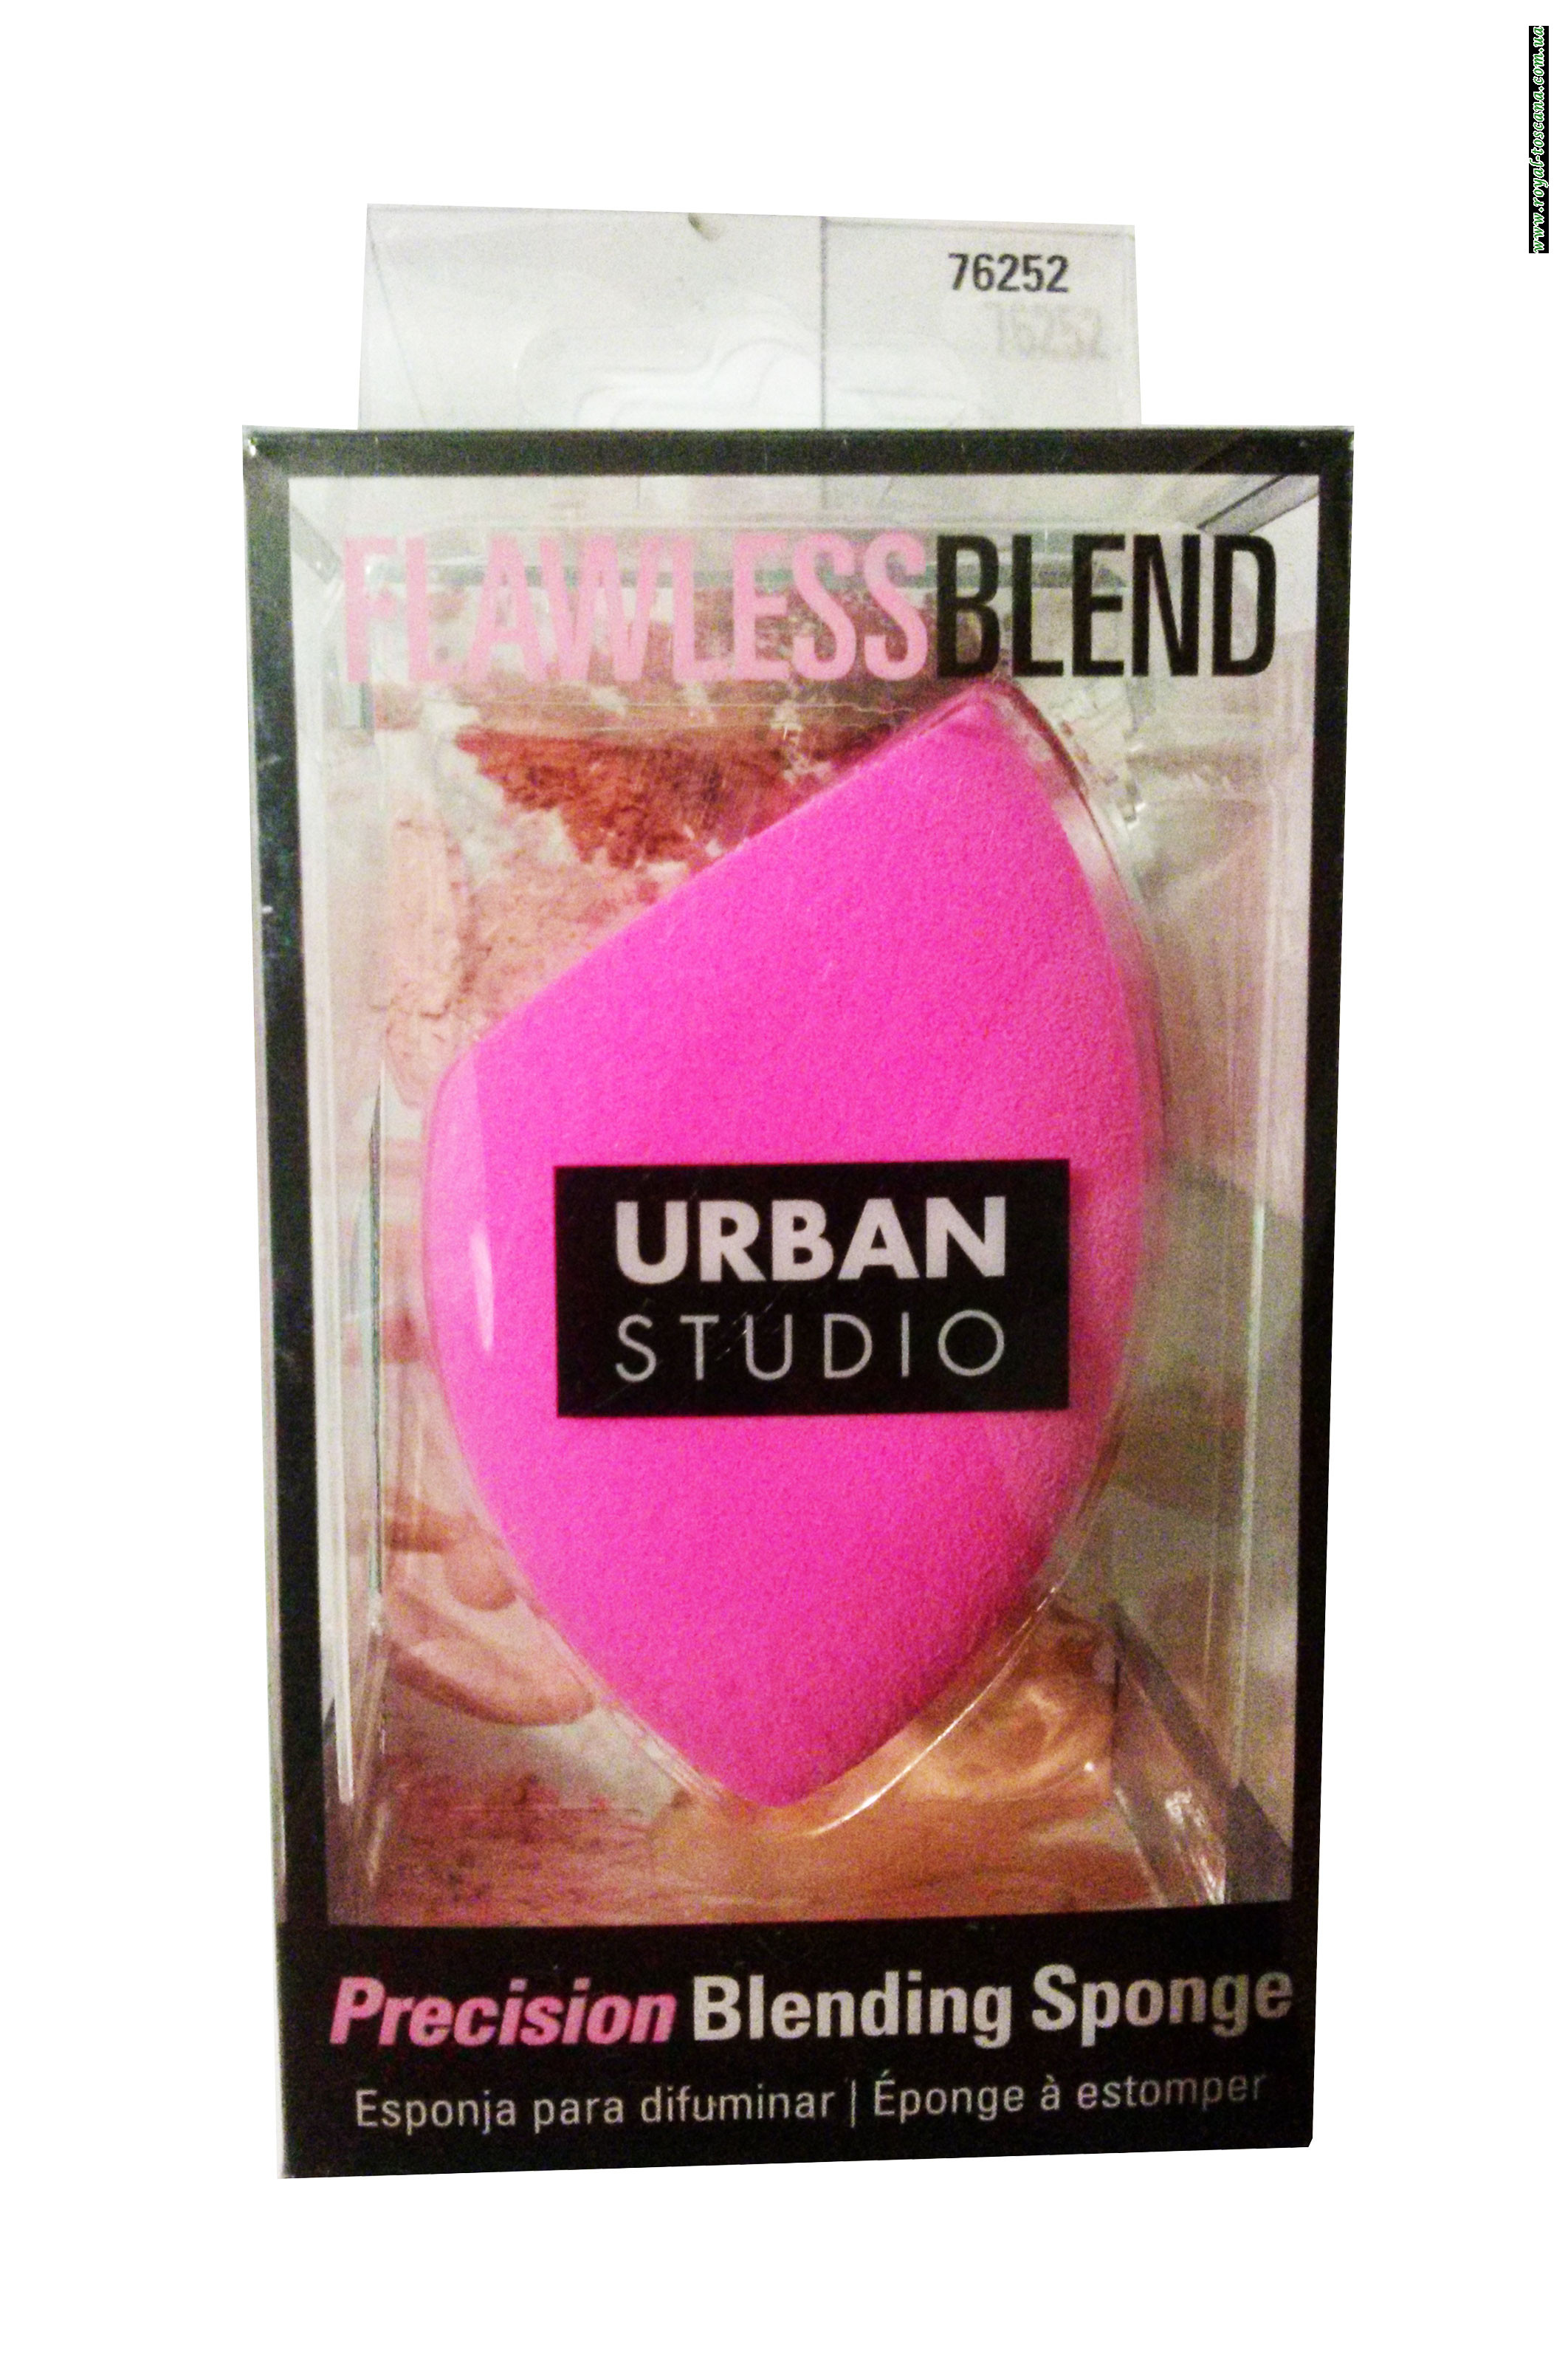 Спонж для точного нанесения Urban Studio Precision Blending Sponge